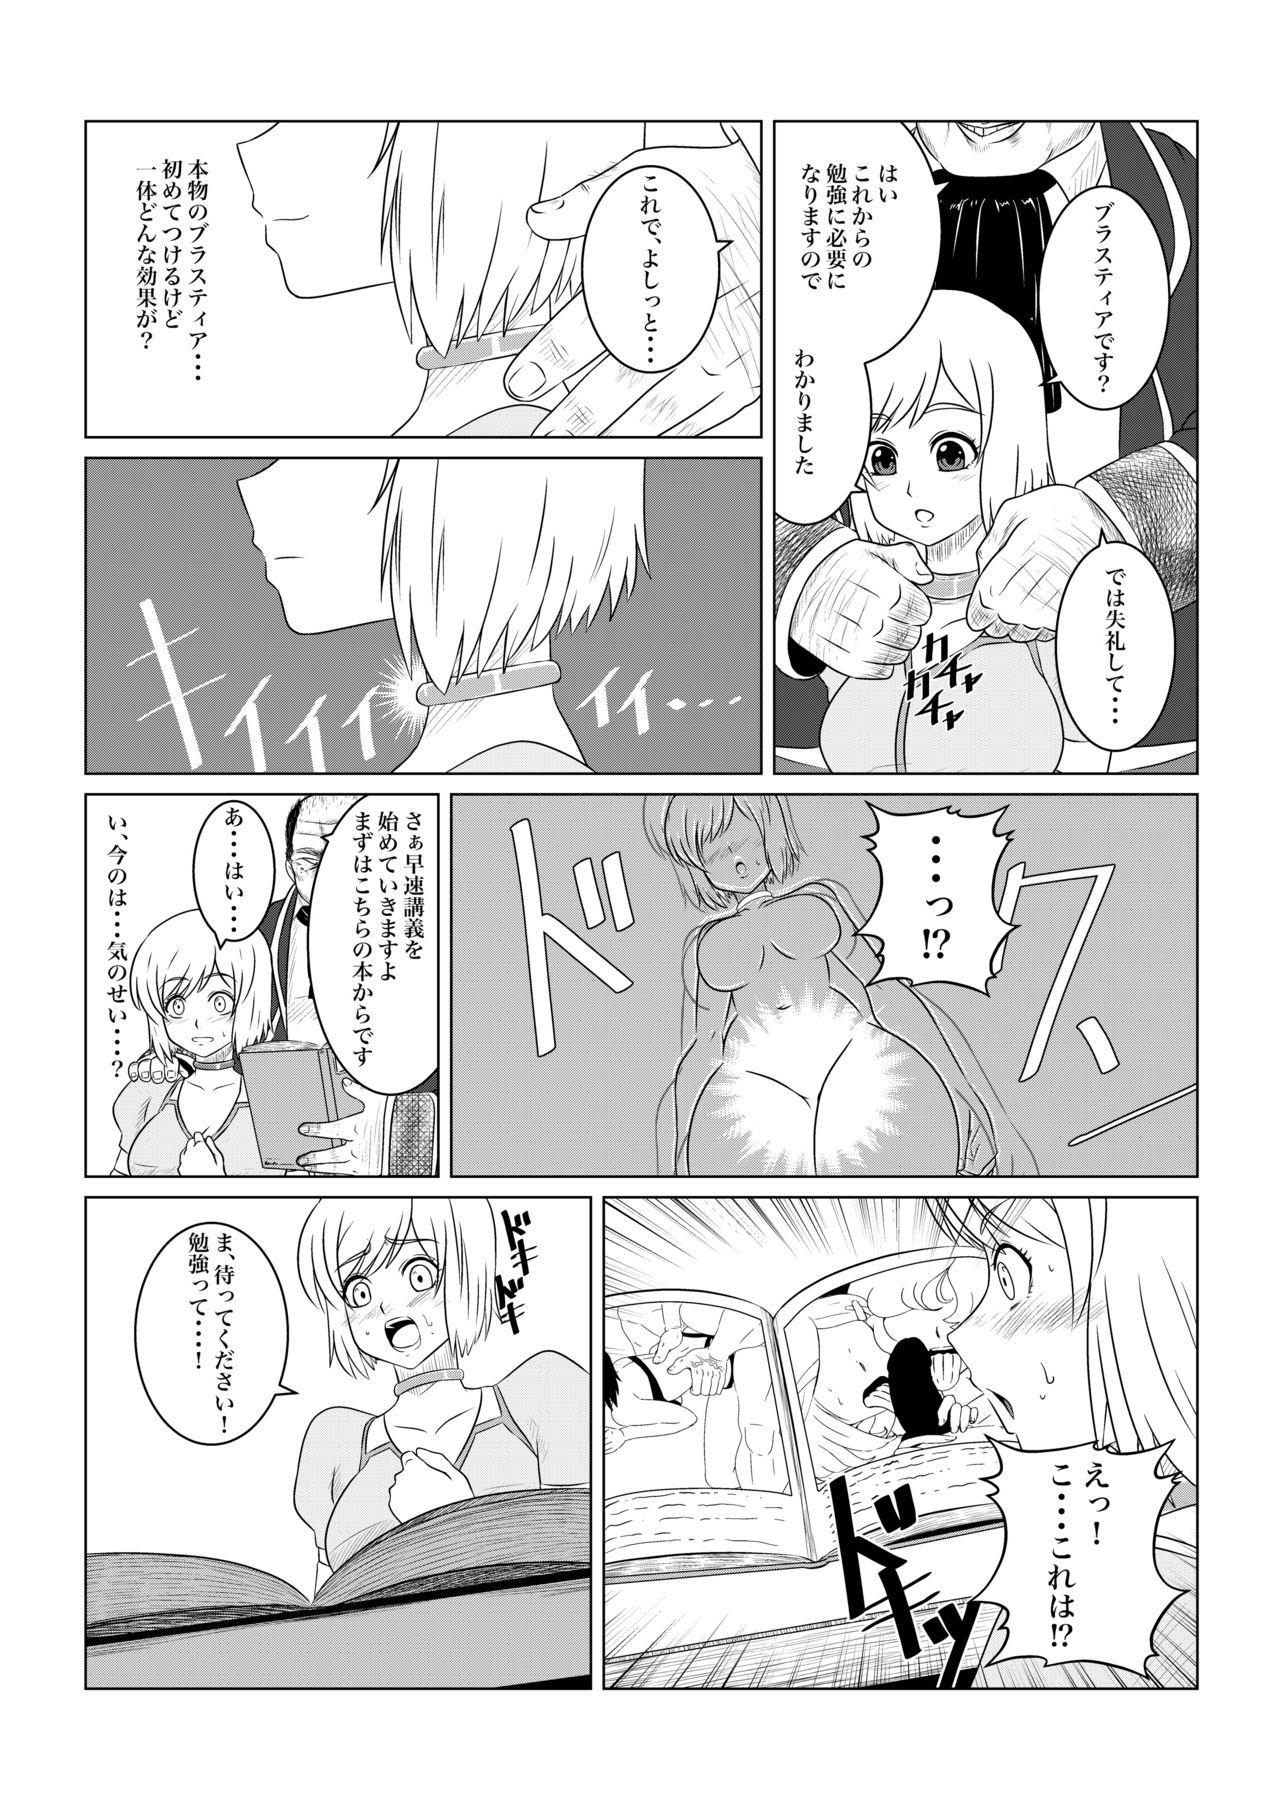 Tgirl Gekka Midarezaki - Tales of vesperia Bunduda - Page 5